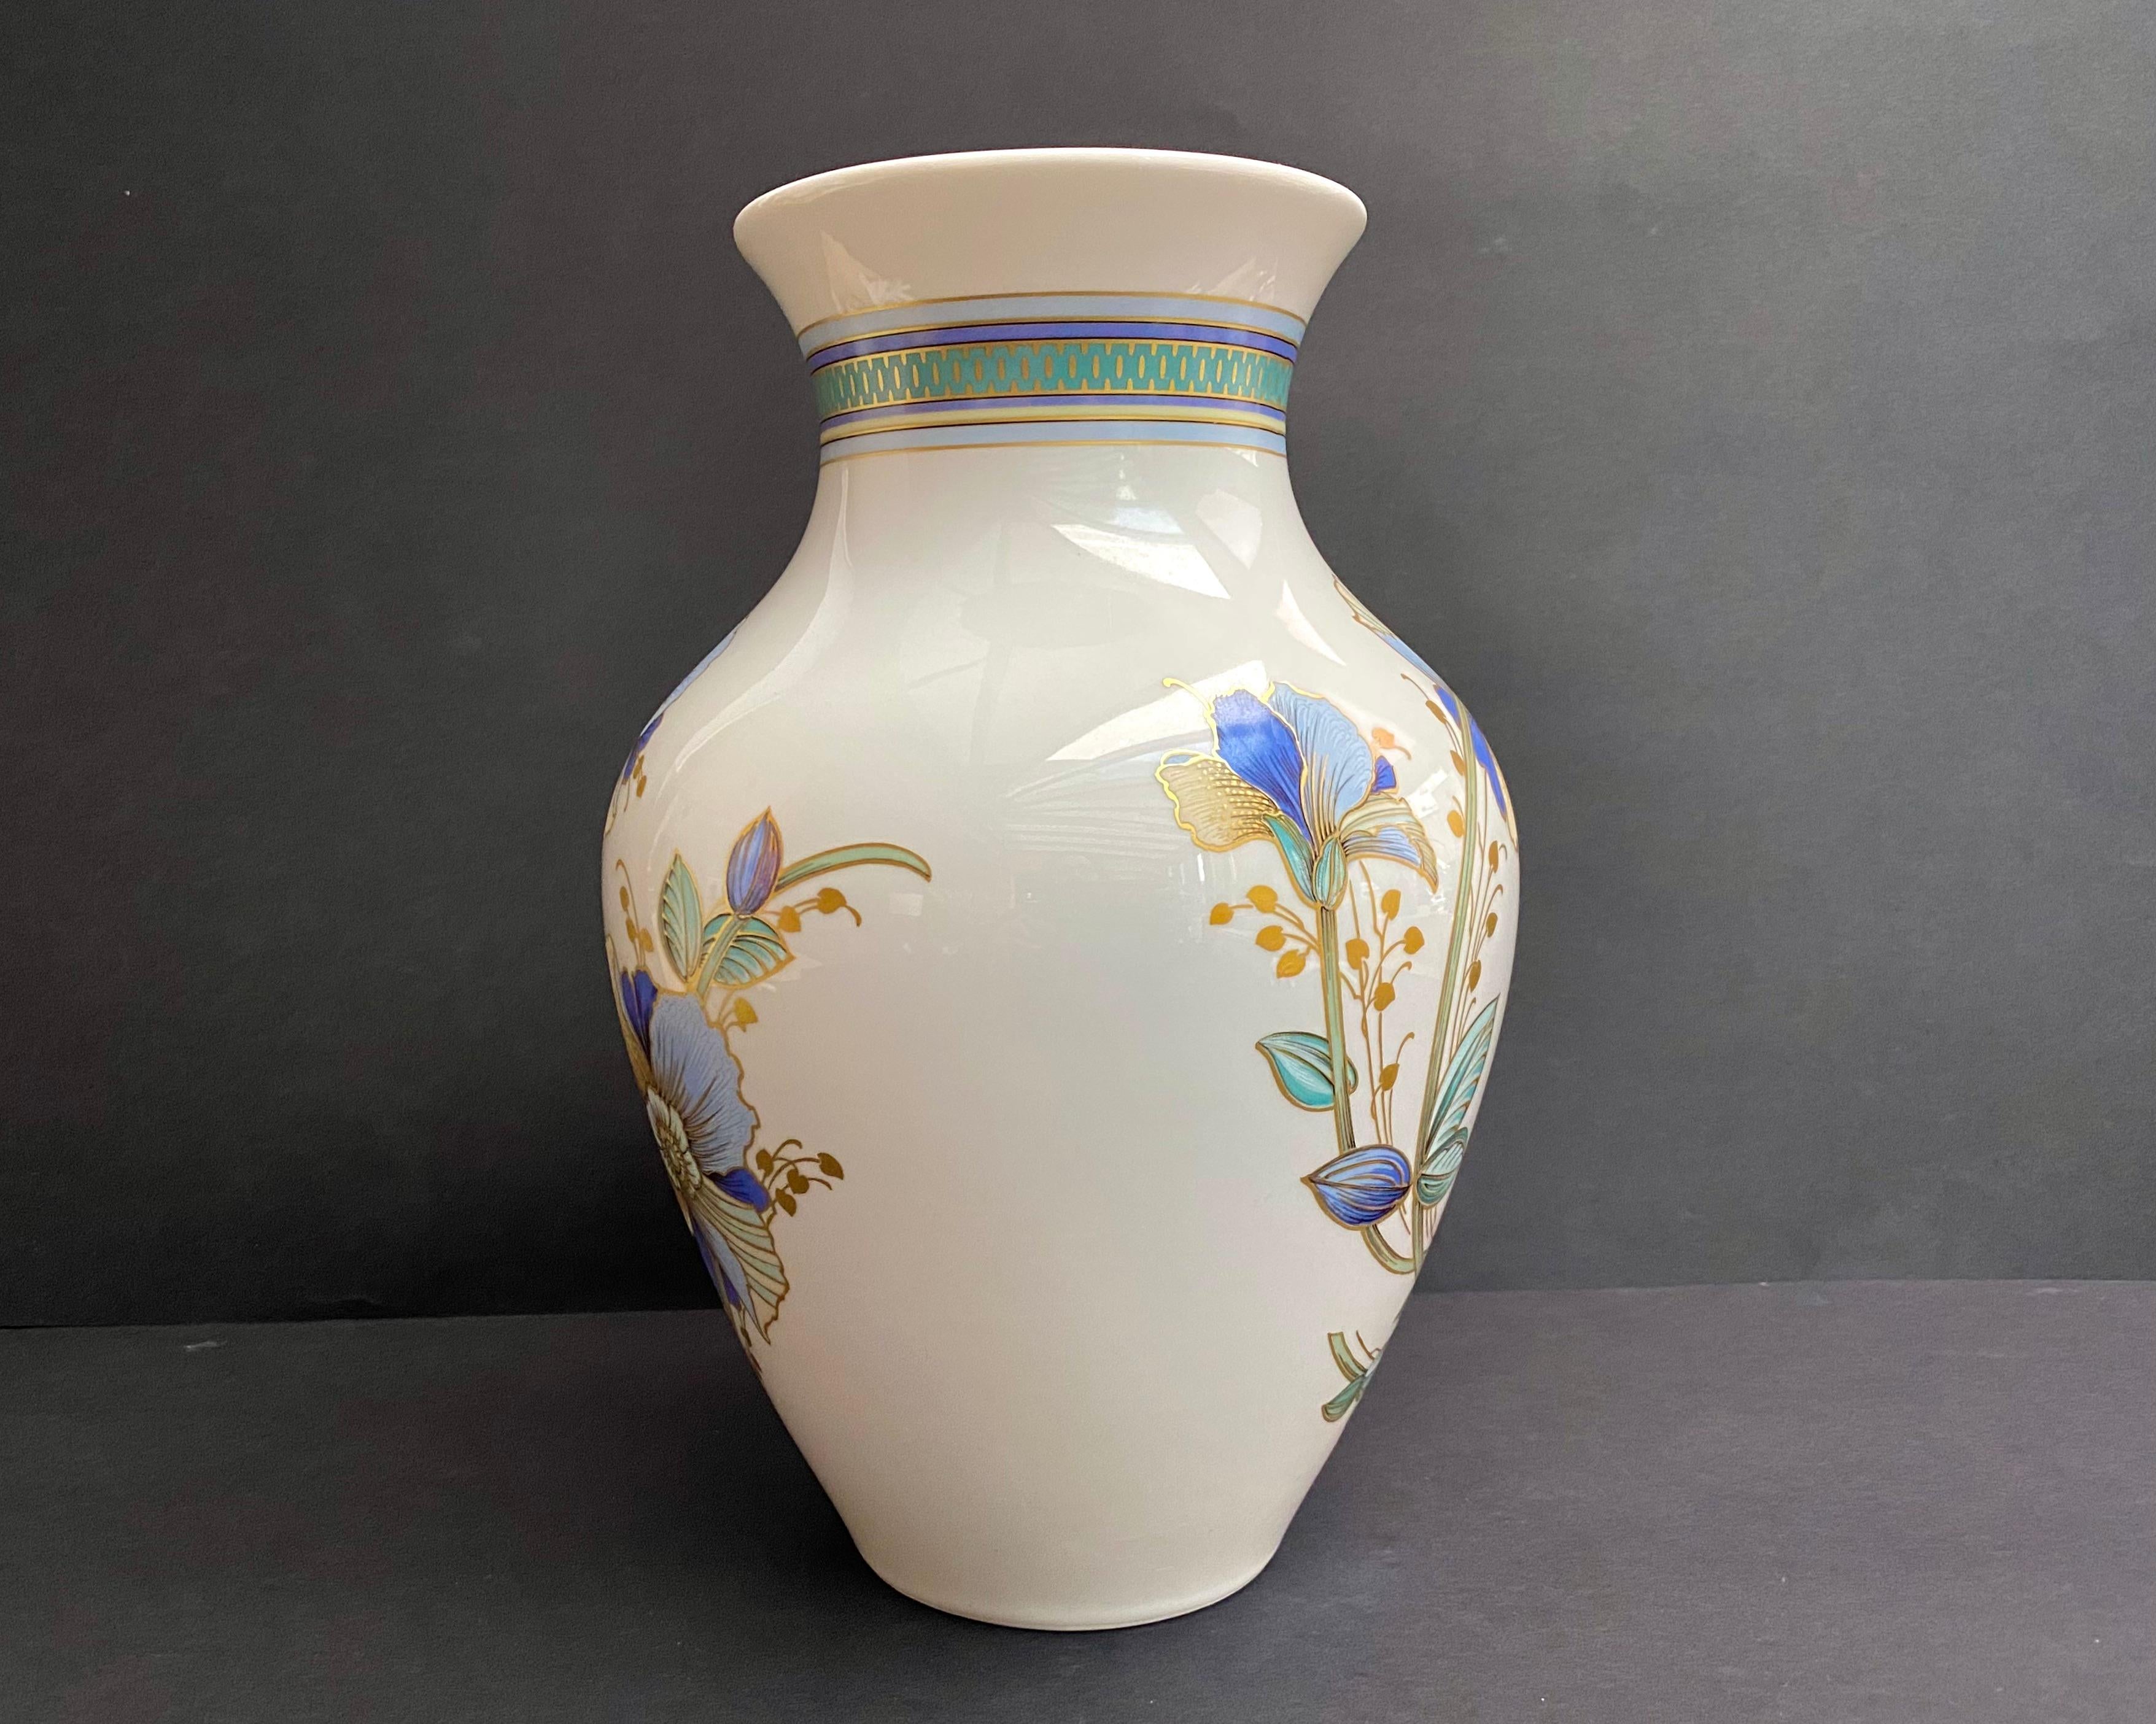 Magnifique vase/jarre vintage en porcelaine plaquée or.

Circa 1970, fabriqué en Allemagne.

Estampillé et numéroté.

Motif floral peint à la main.

Avec ce vase, vous pouvez créer du confort et de l'harmonie dans n'importe quelle pièce.

Le vase